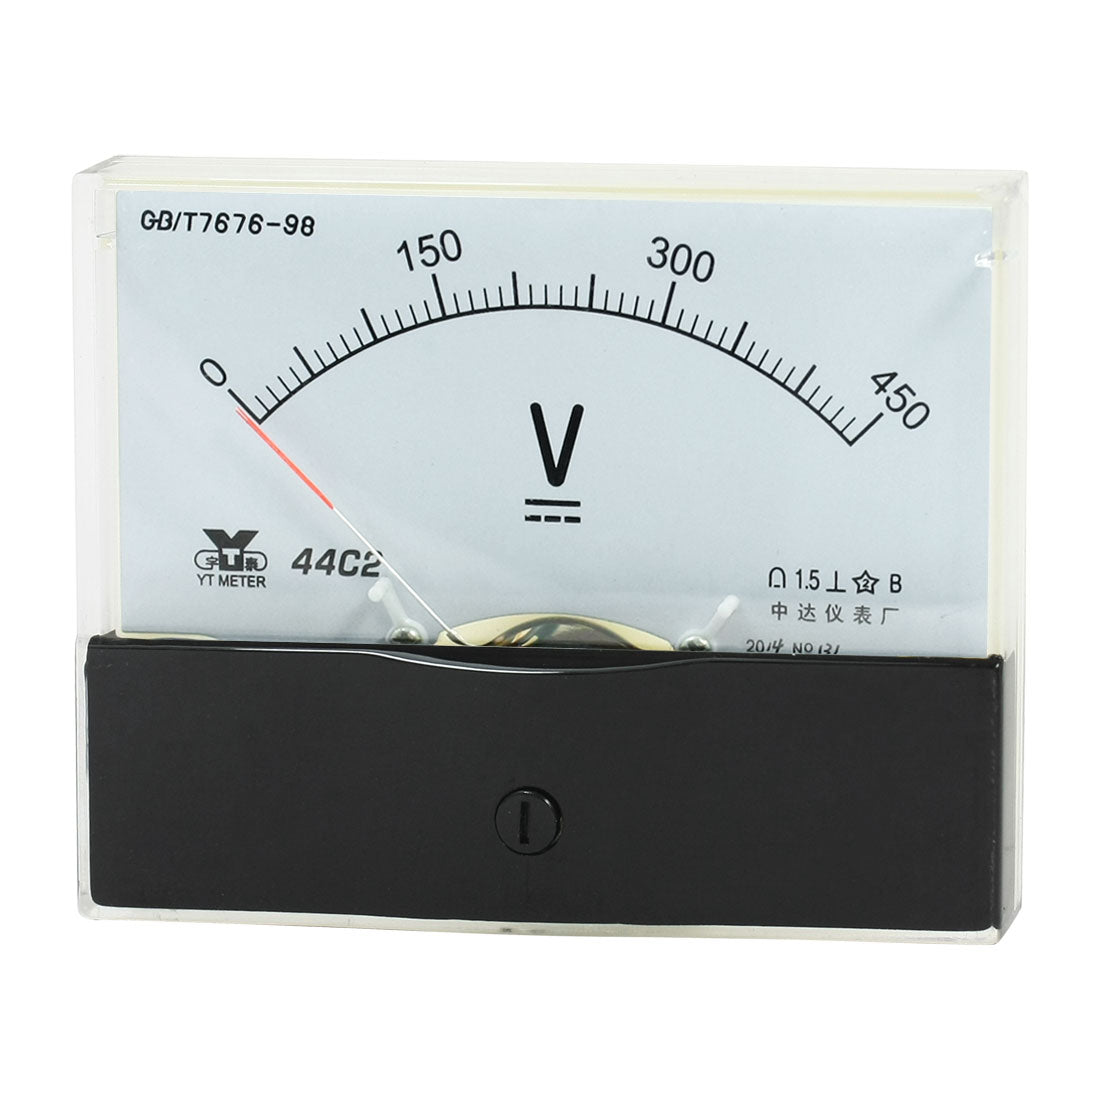 uxcell Uxcell Rectangle Measurement Tool Analog Panel Voltmeter Volt Meter DC 0 - 450V Measuring Range 44C2